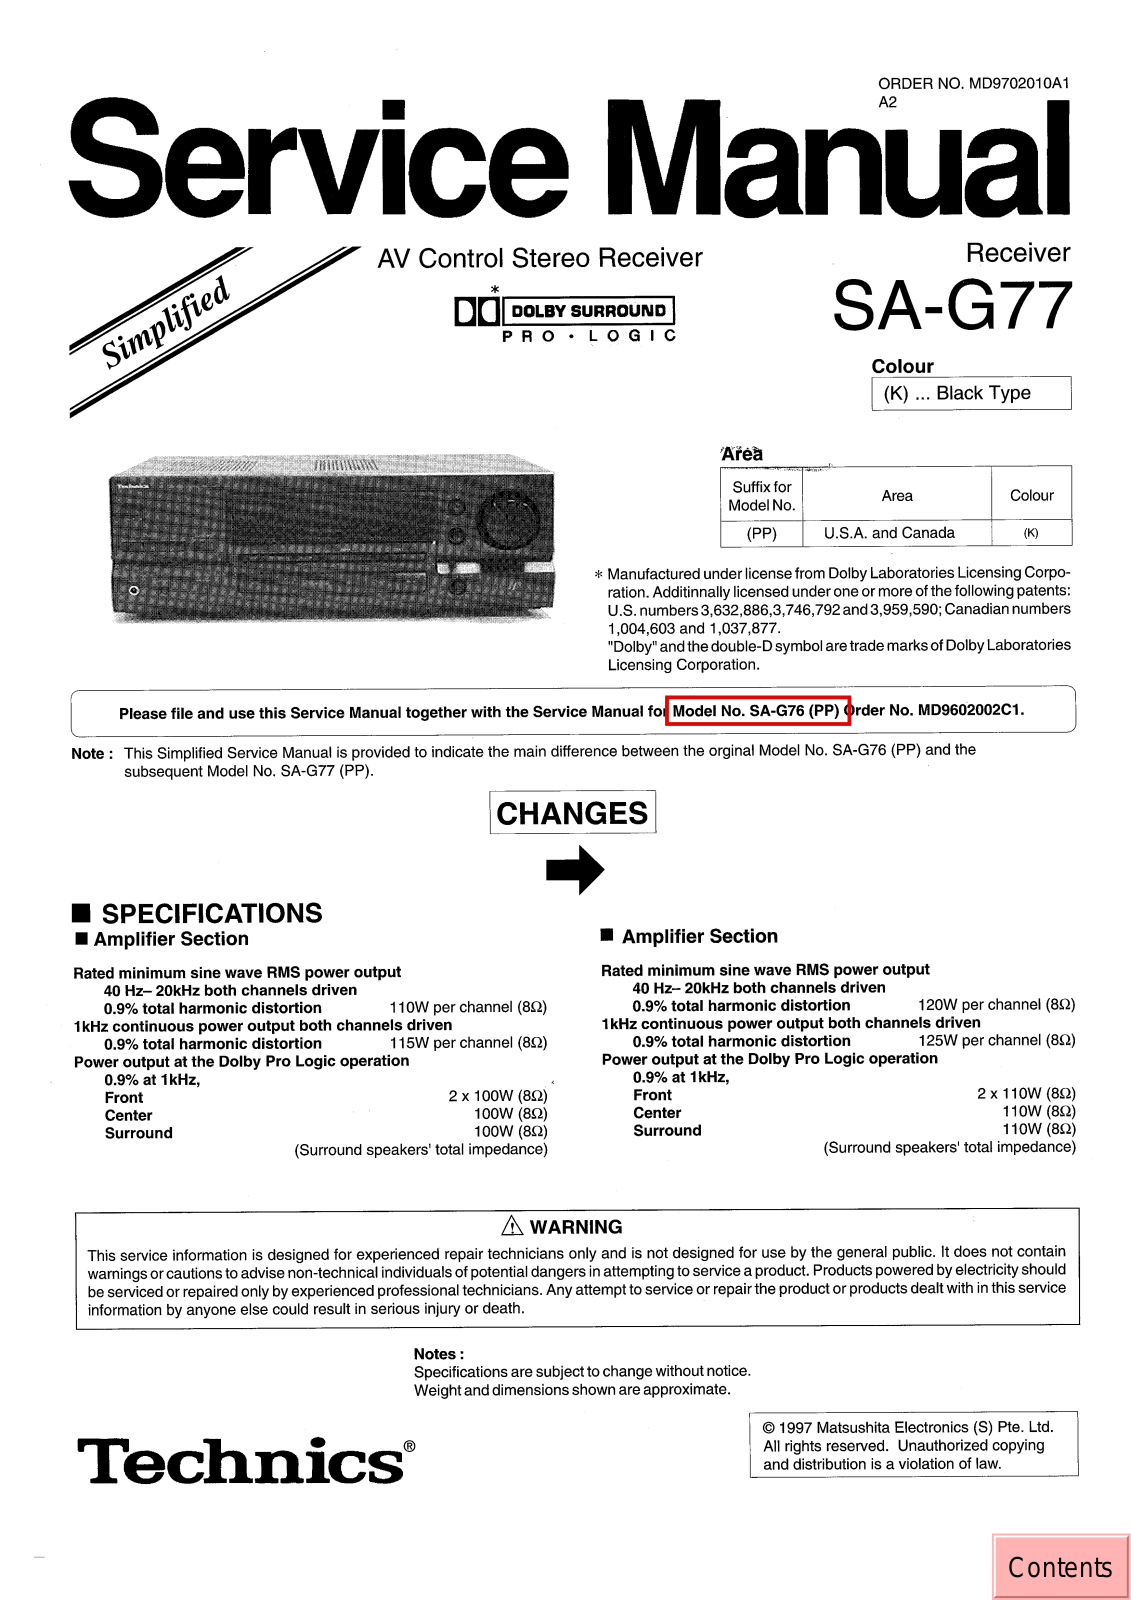 Technics SAG-77 Service manual